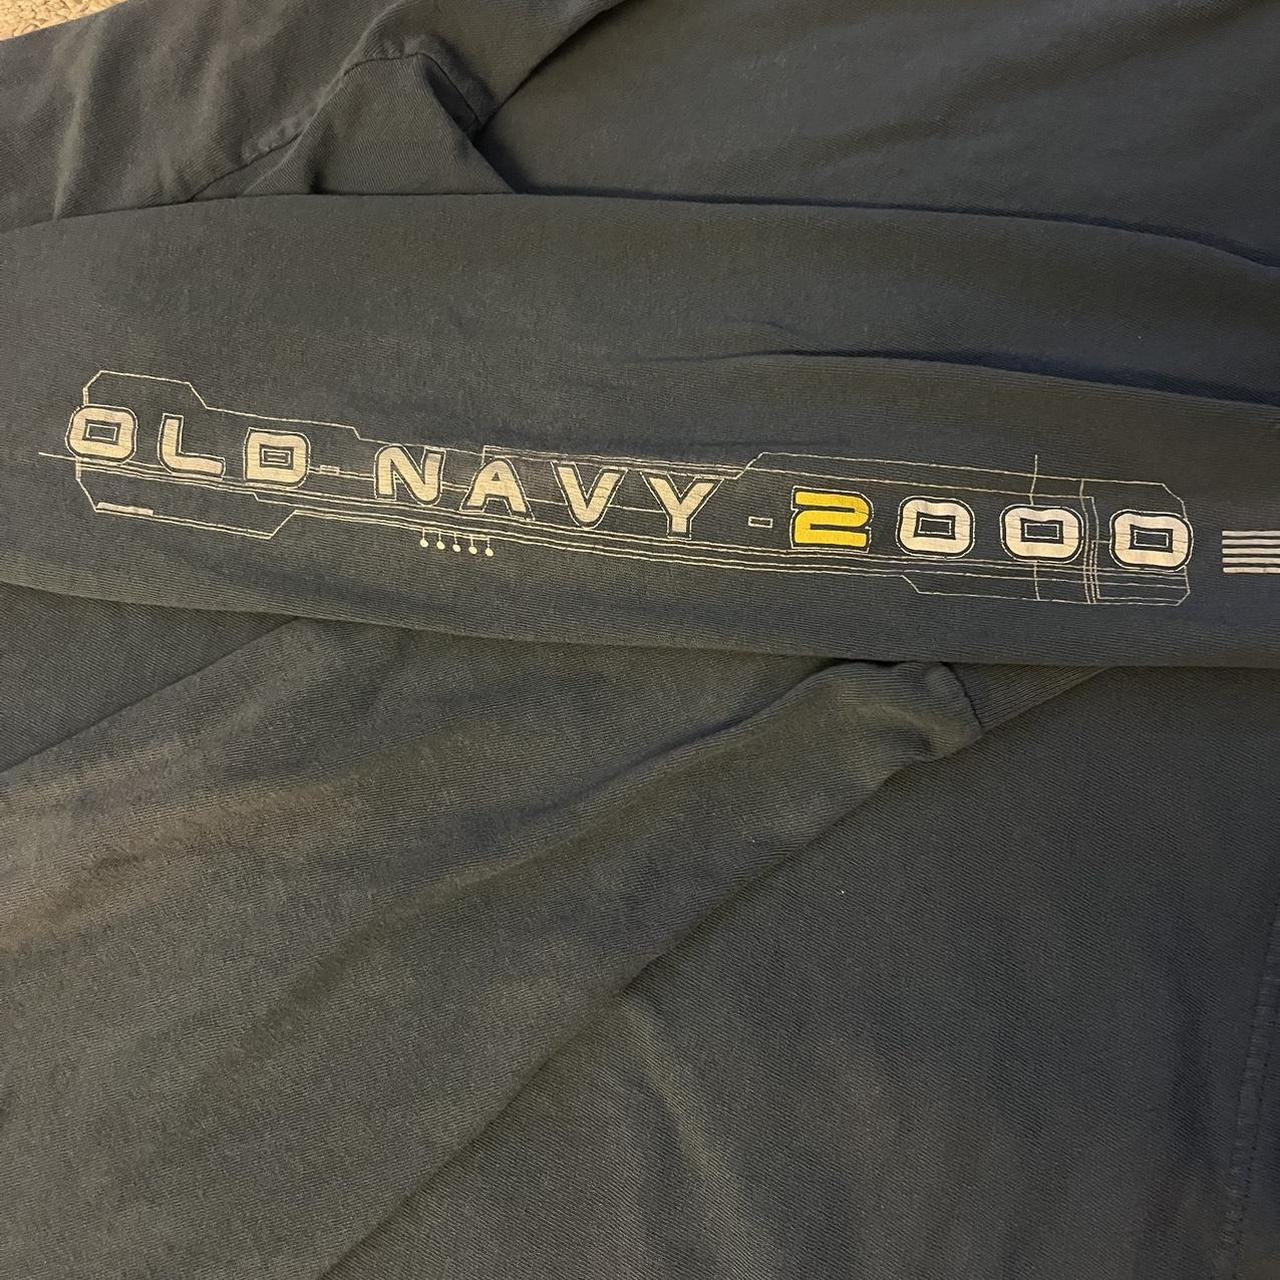 Vintage y2k 2000s old navy brand size Large low - Depop